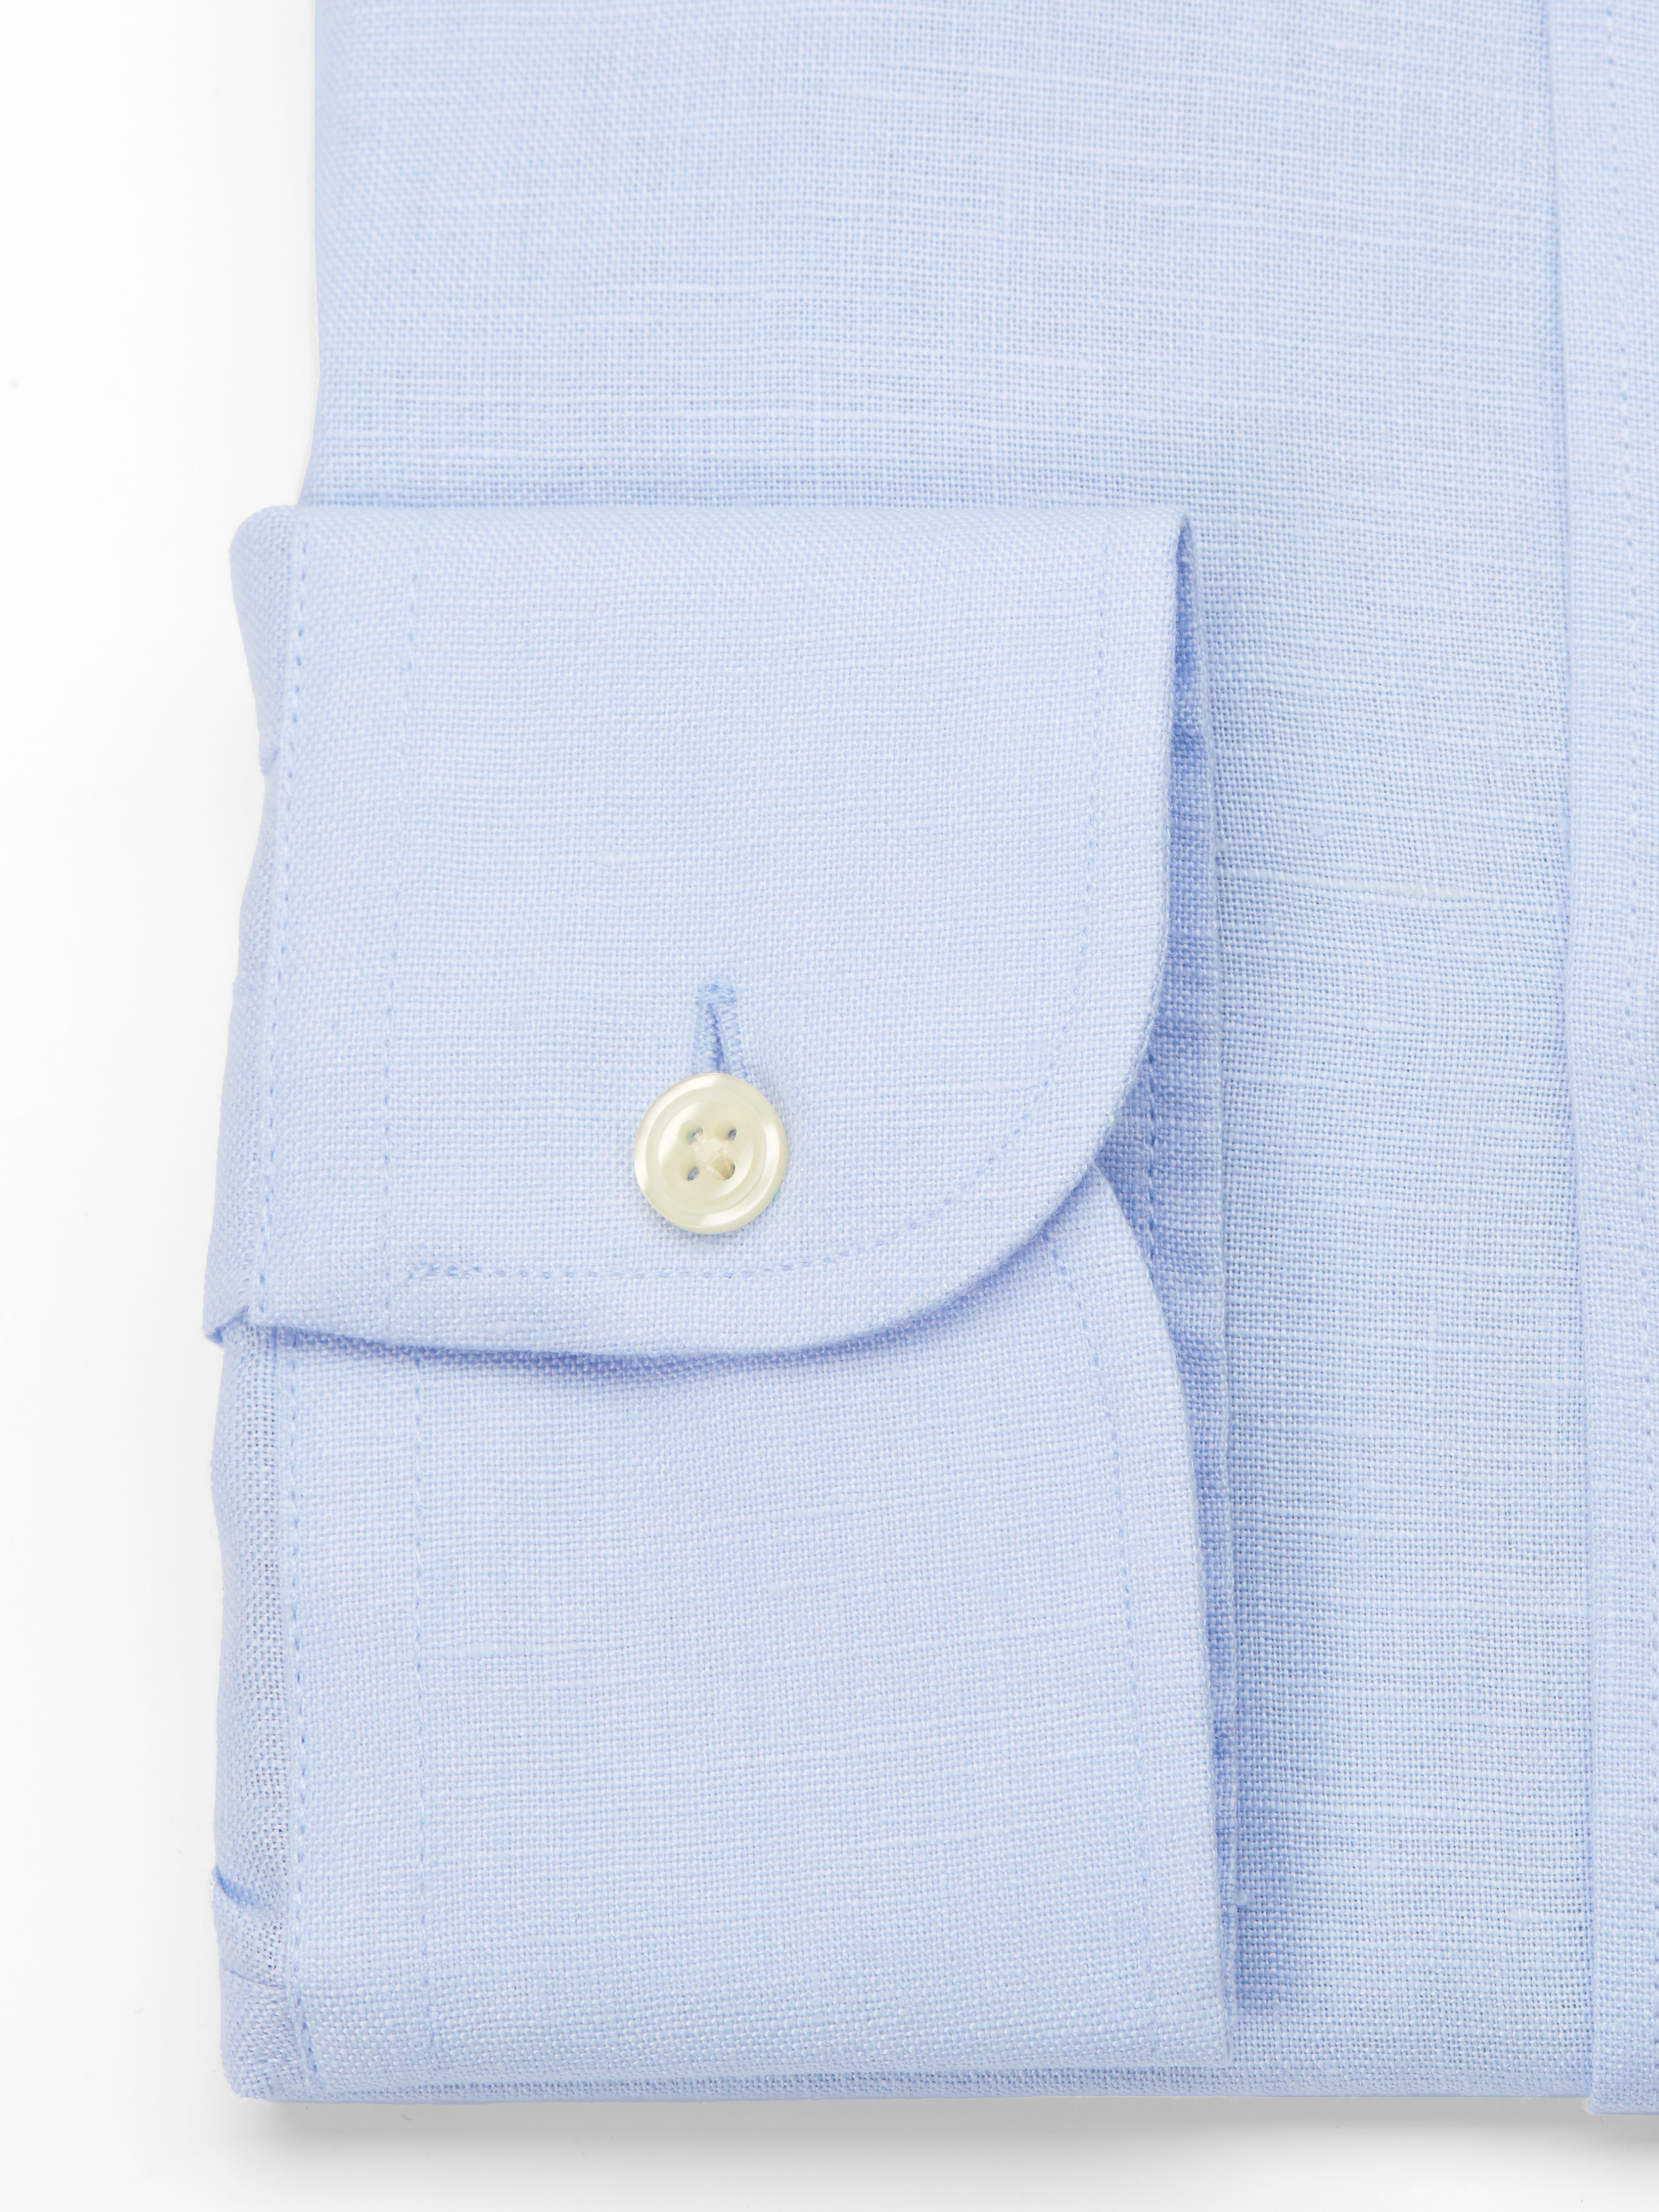 Sky Blue Bridford Linen Cutaway Collar Shirt